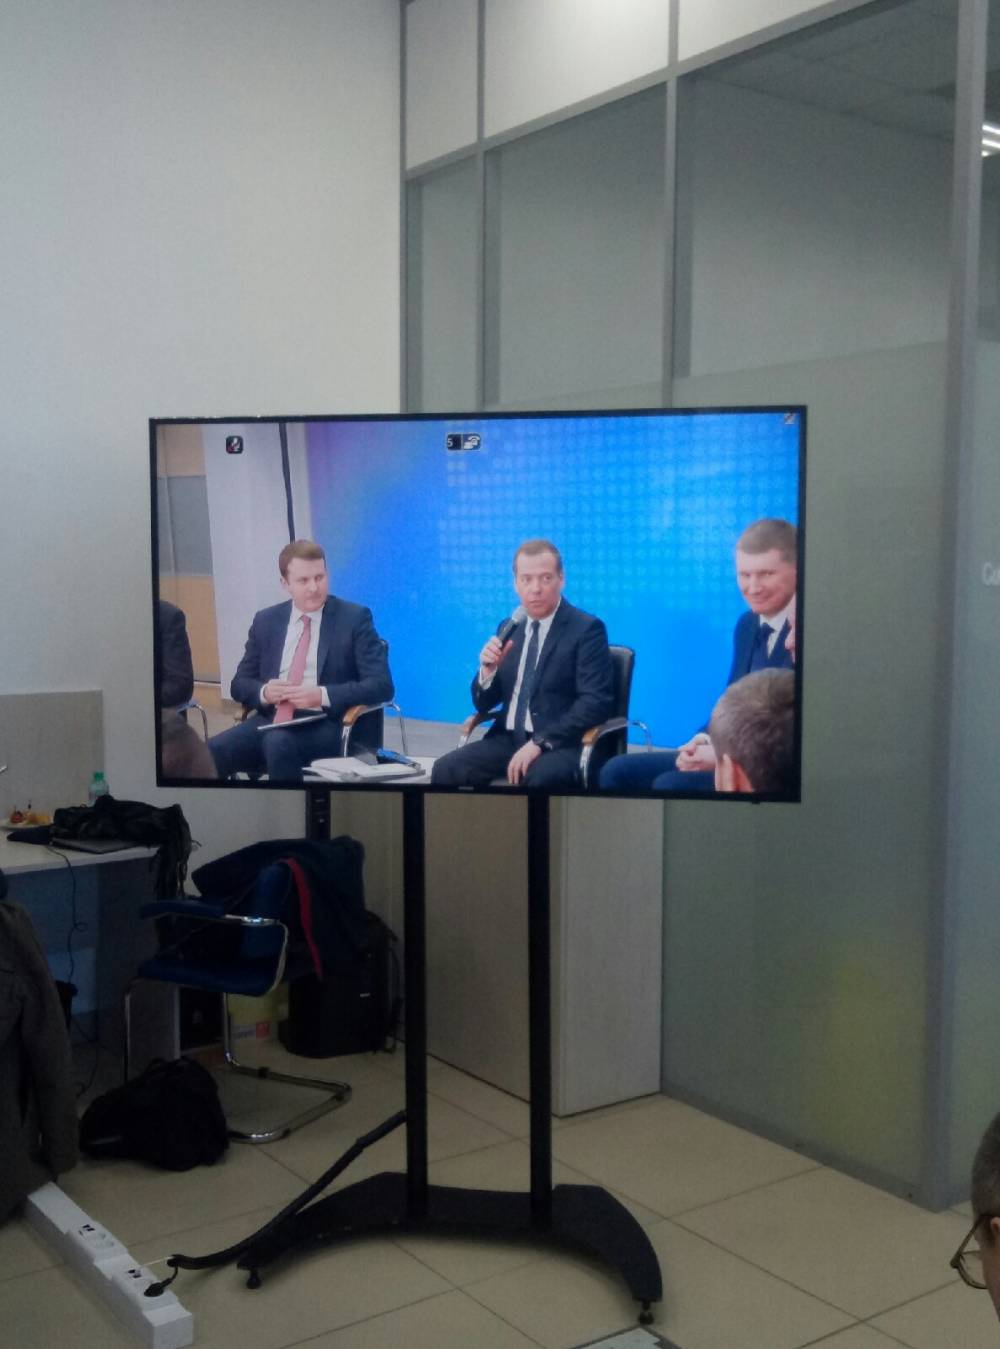 Очевидцы сняли кортеж премьера Дмитрия Медведева в Перми